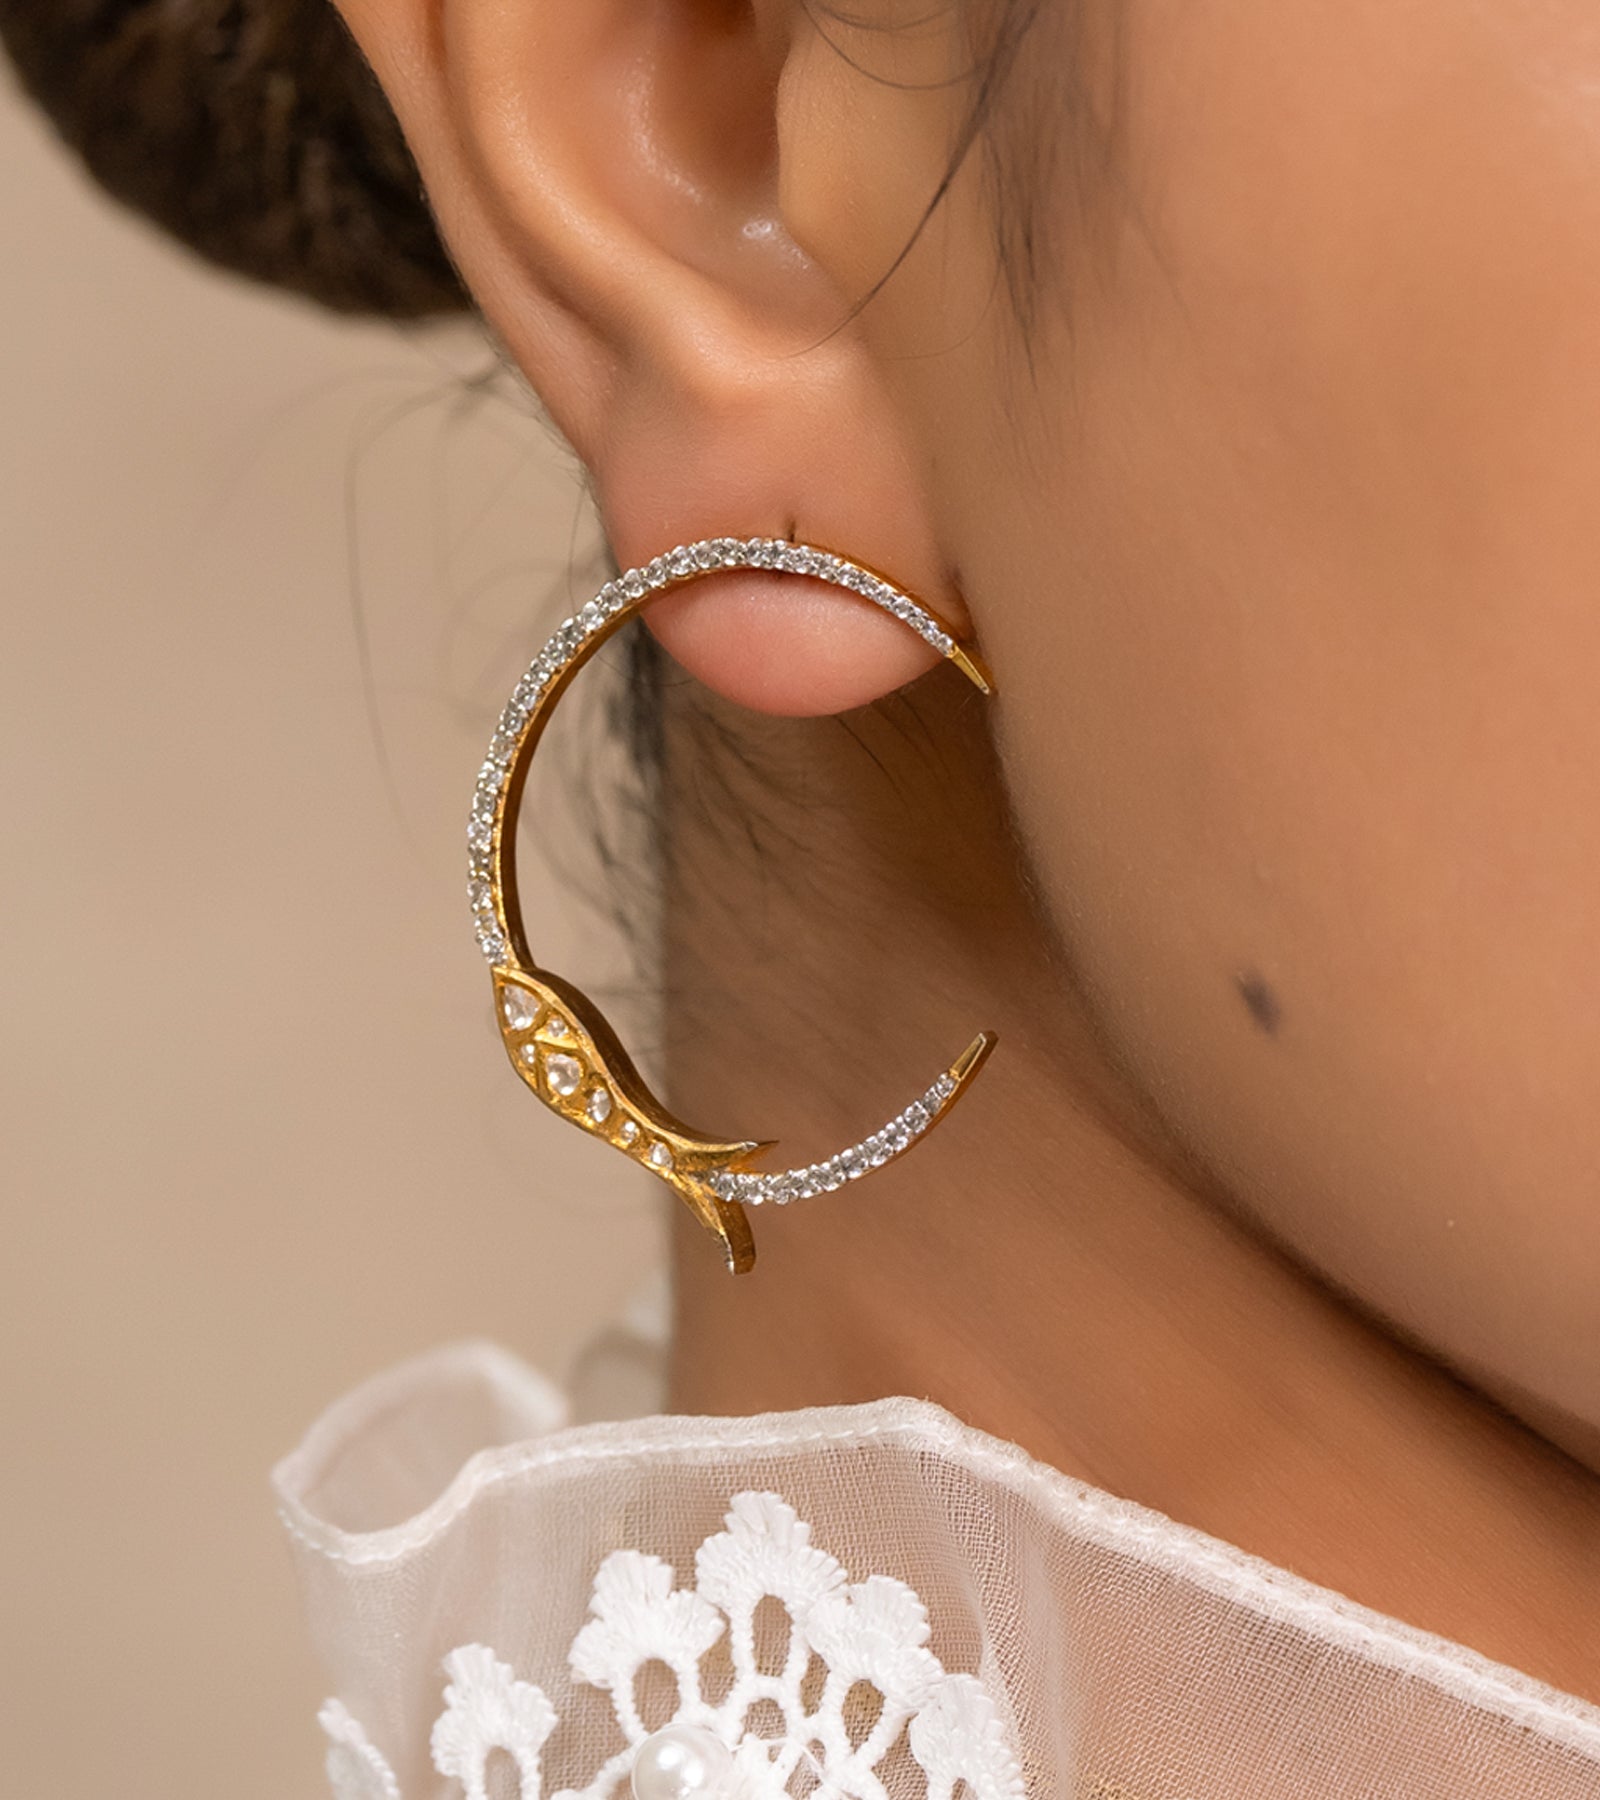 Heirloom Earrings by UNCUT Jewelry